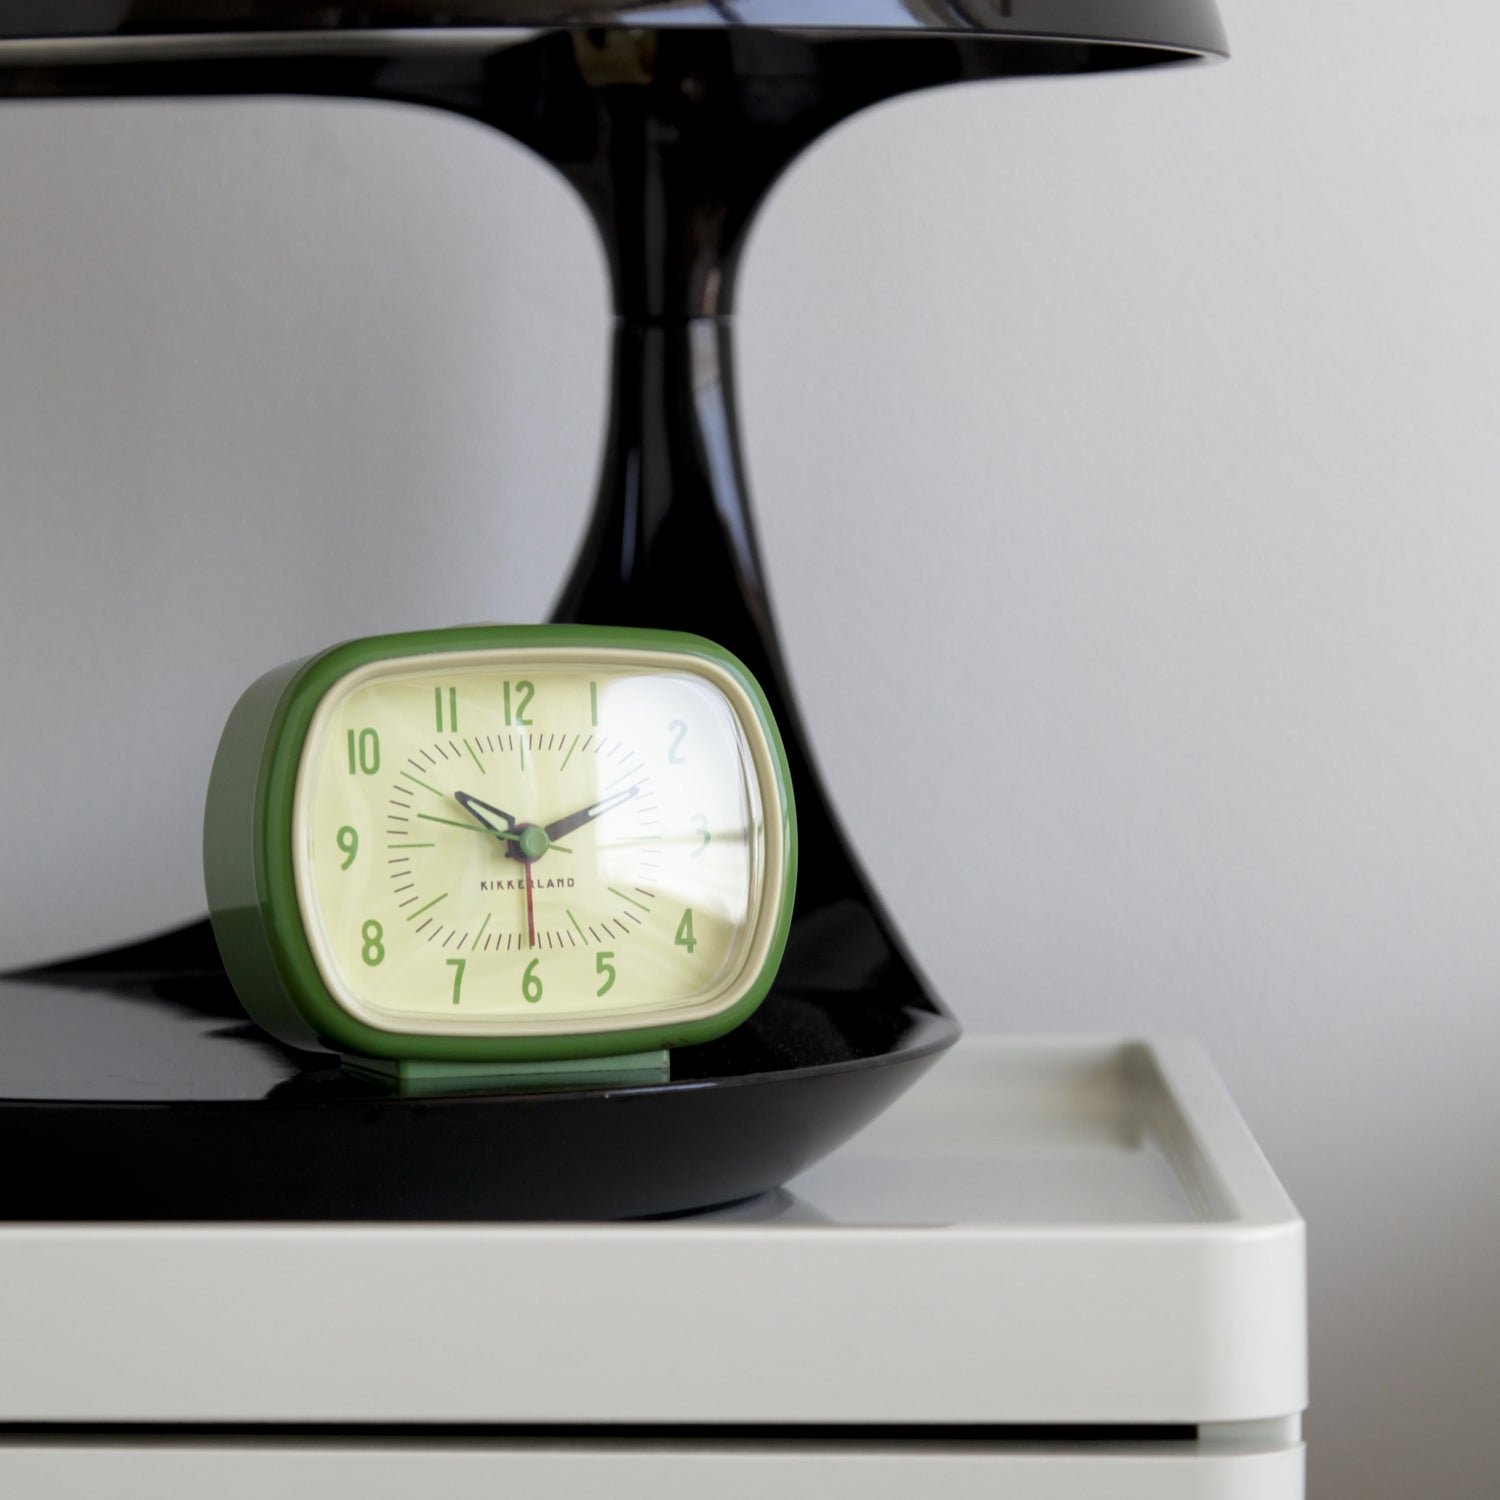 Reloj despertador retro + verde